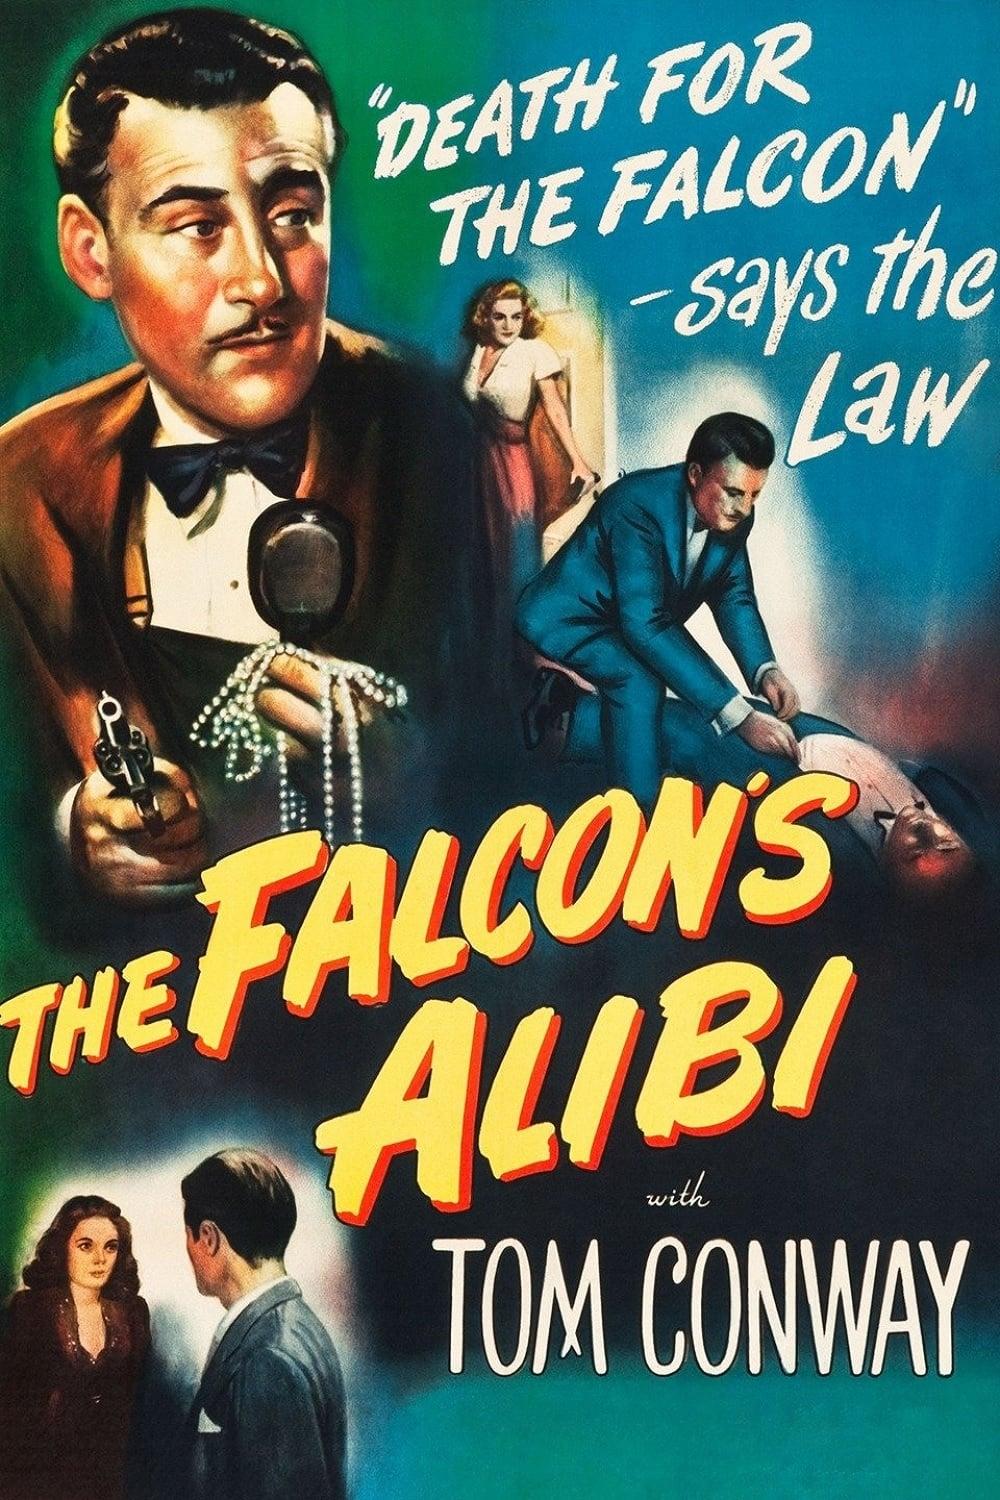 The Falcon's Alibi poster